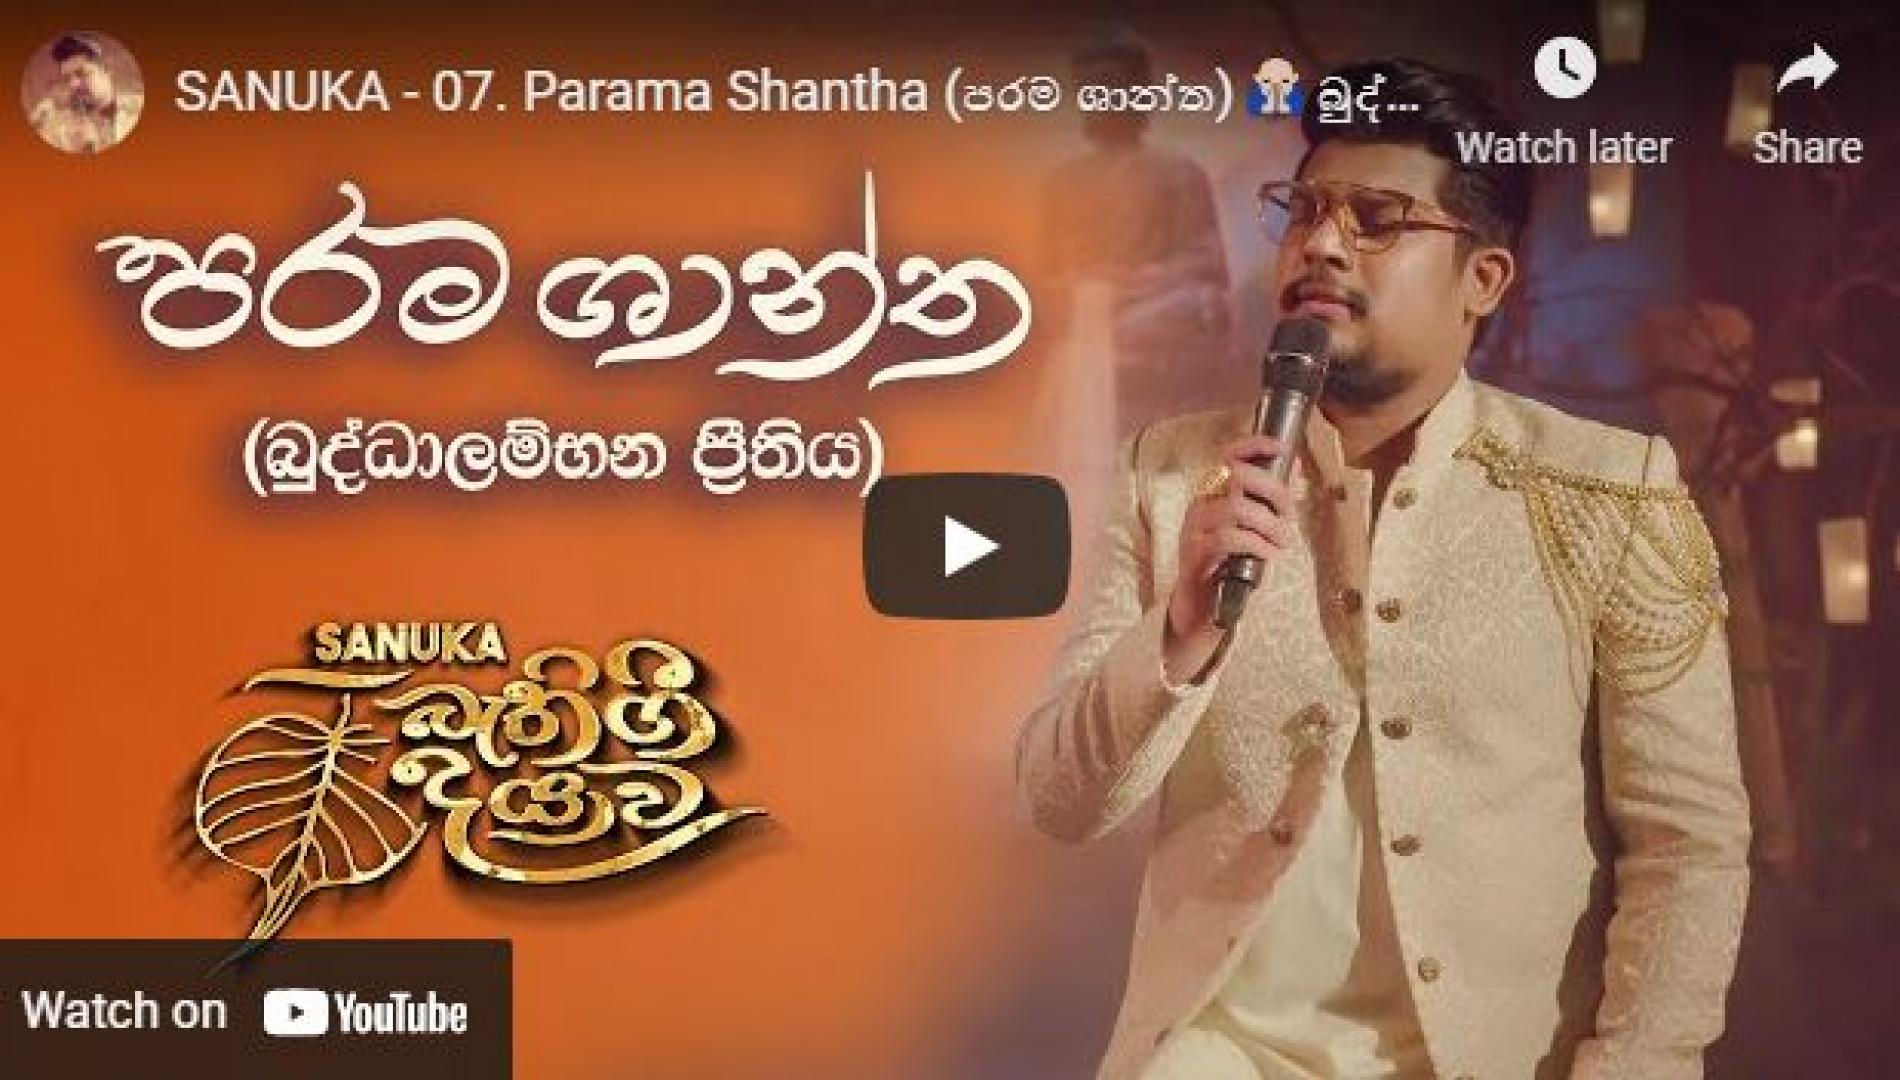 New Music : SANUKA – 07 Parama Shantha (පරම ශාන්ත) 🙏 බුද්ධාලම්භන ප්‍රීතිය | Bathi Gee Dayawa